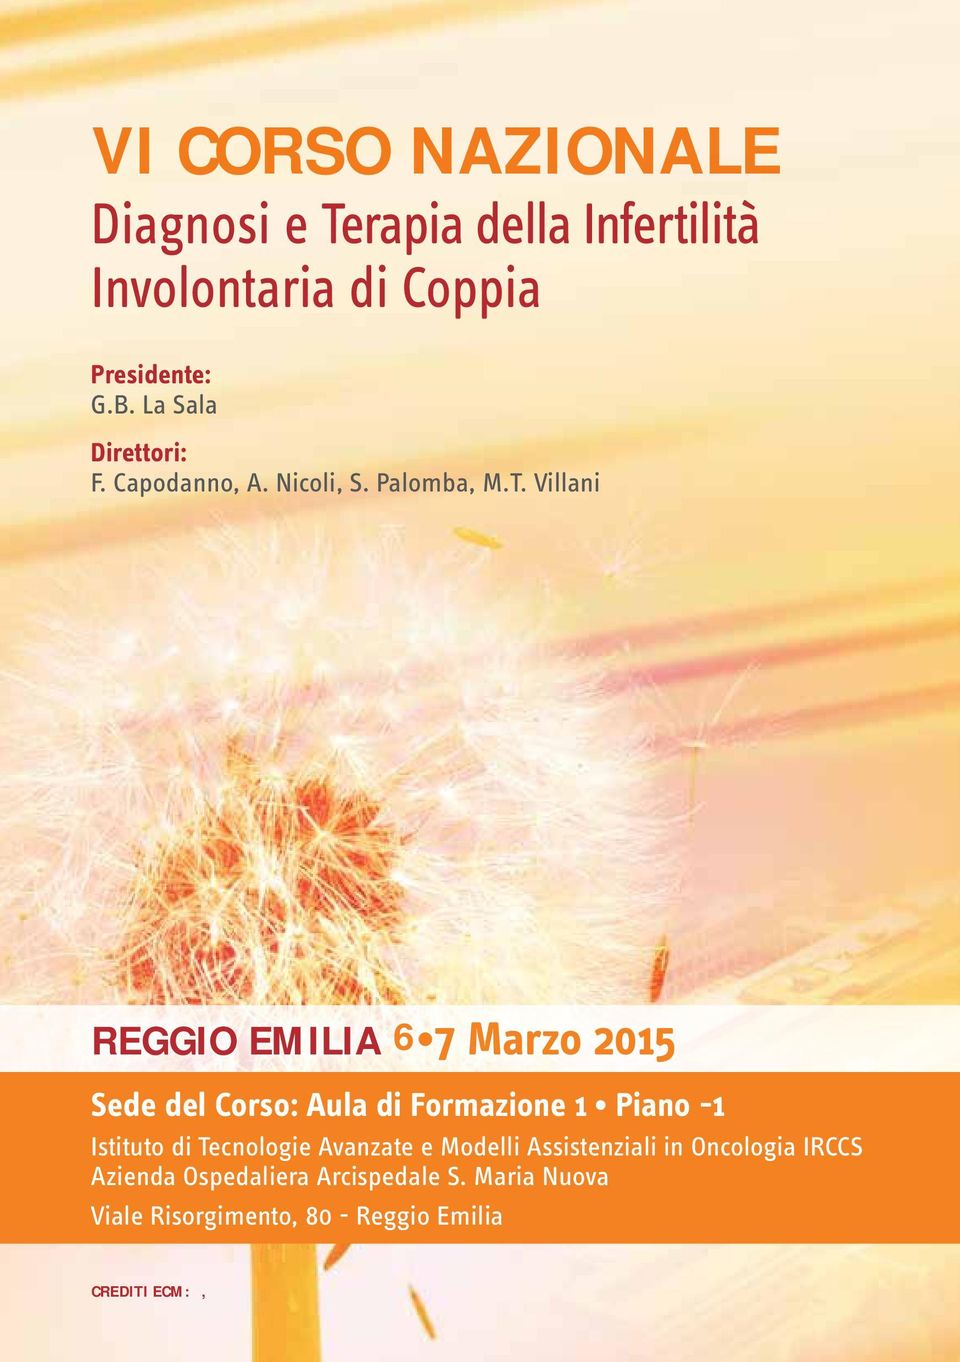 Villani Reggio Emilia 6 7 Marzo 2015 Sede del Corso: Aula di Formazione 1 Piano -1 Istituto di